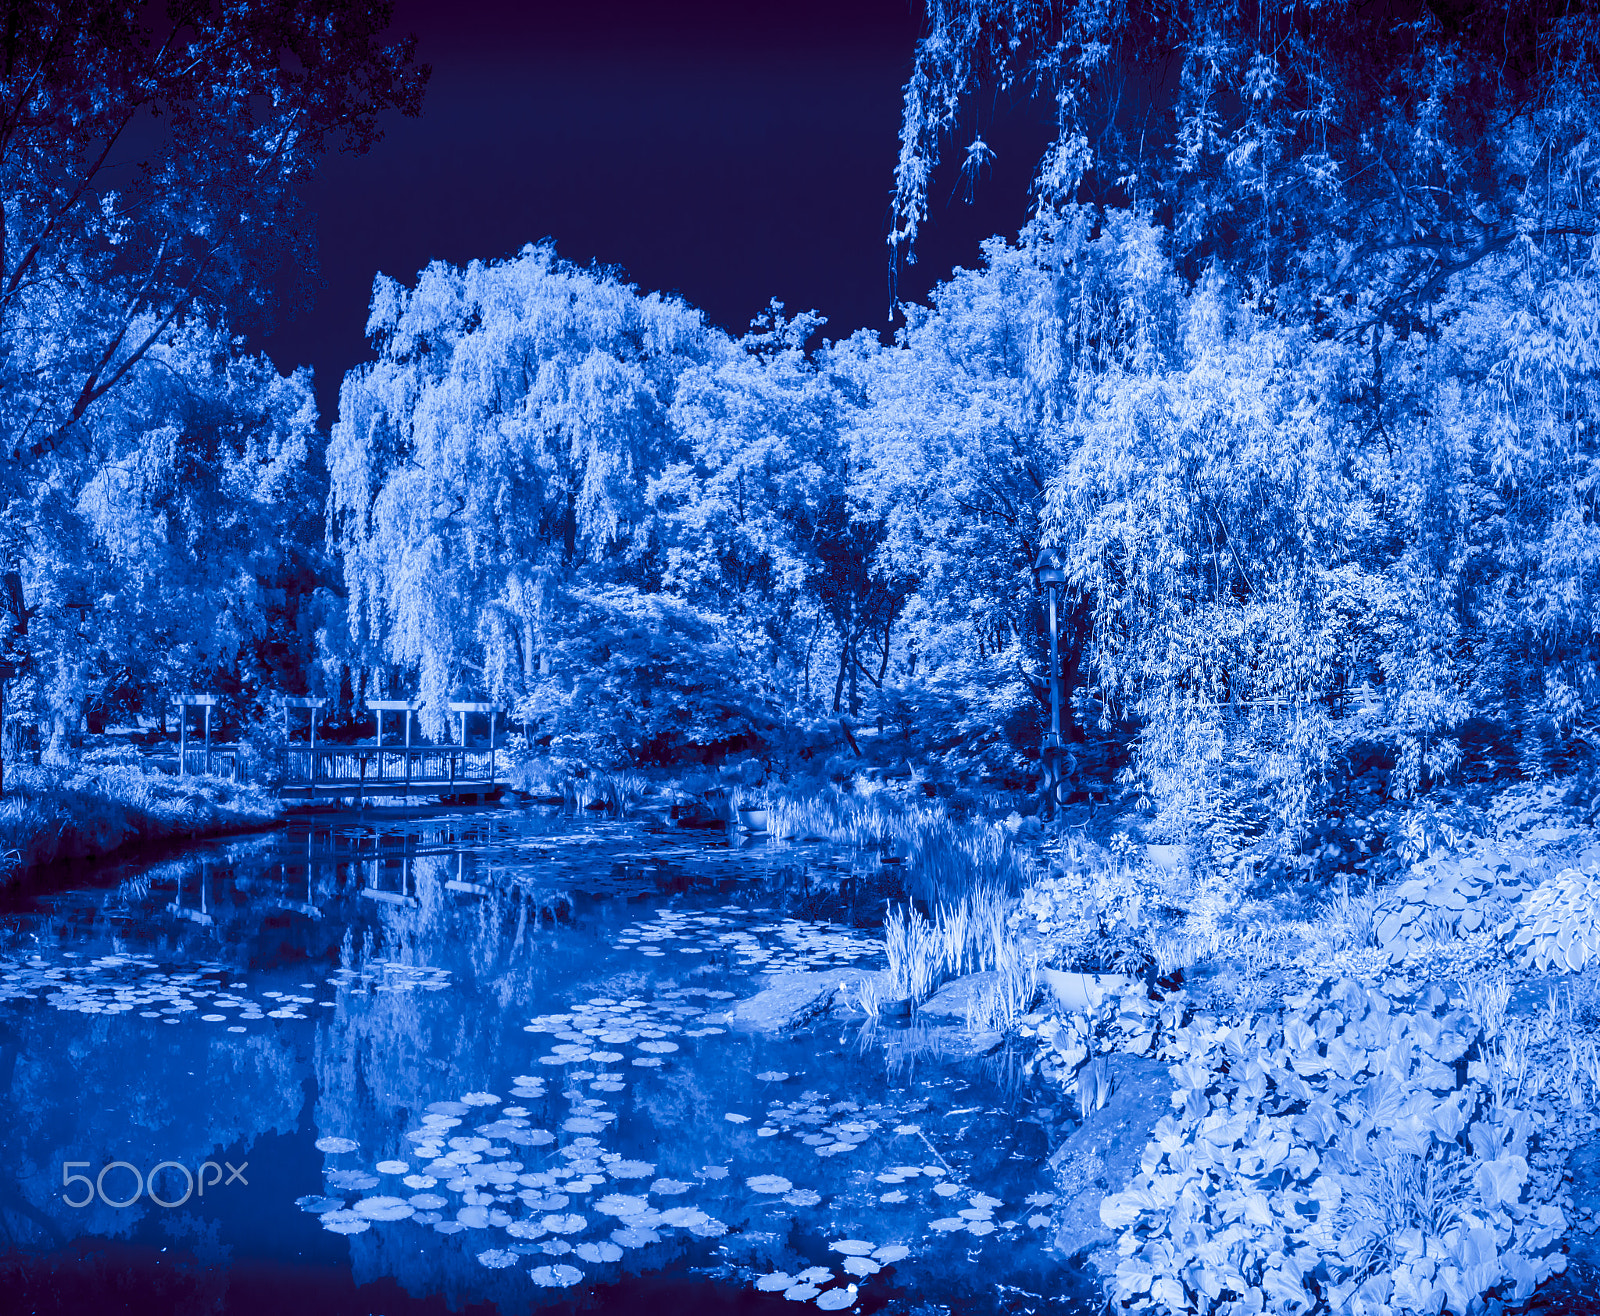 Olympus PEN E-PL5 sample photo. Blue landscape photography